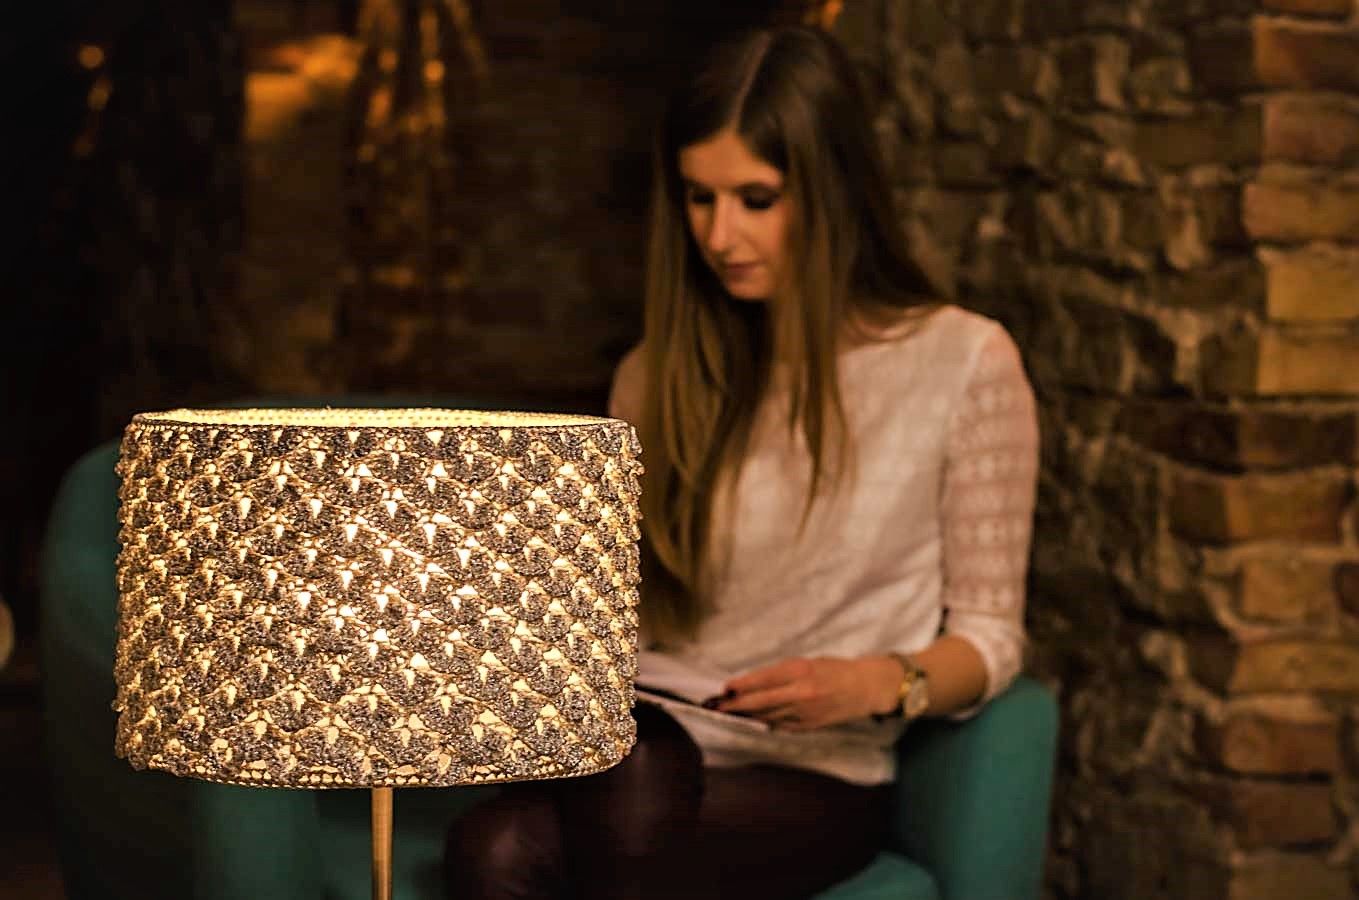 lampa zrobiona na szydełku i kobieta czytająca lampę